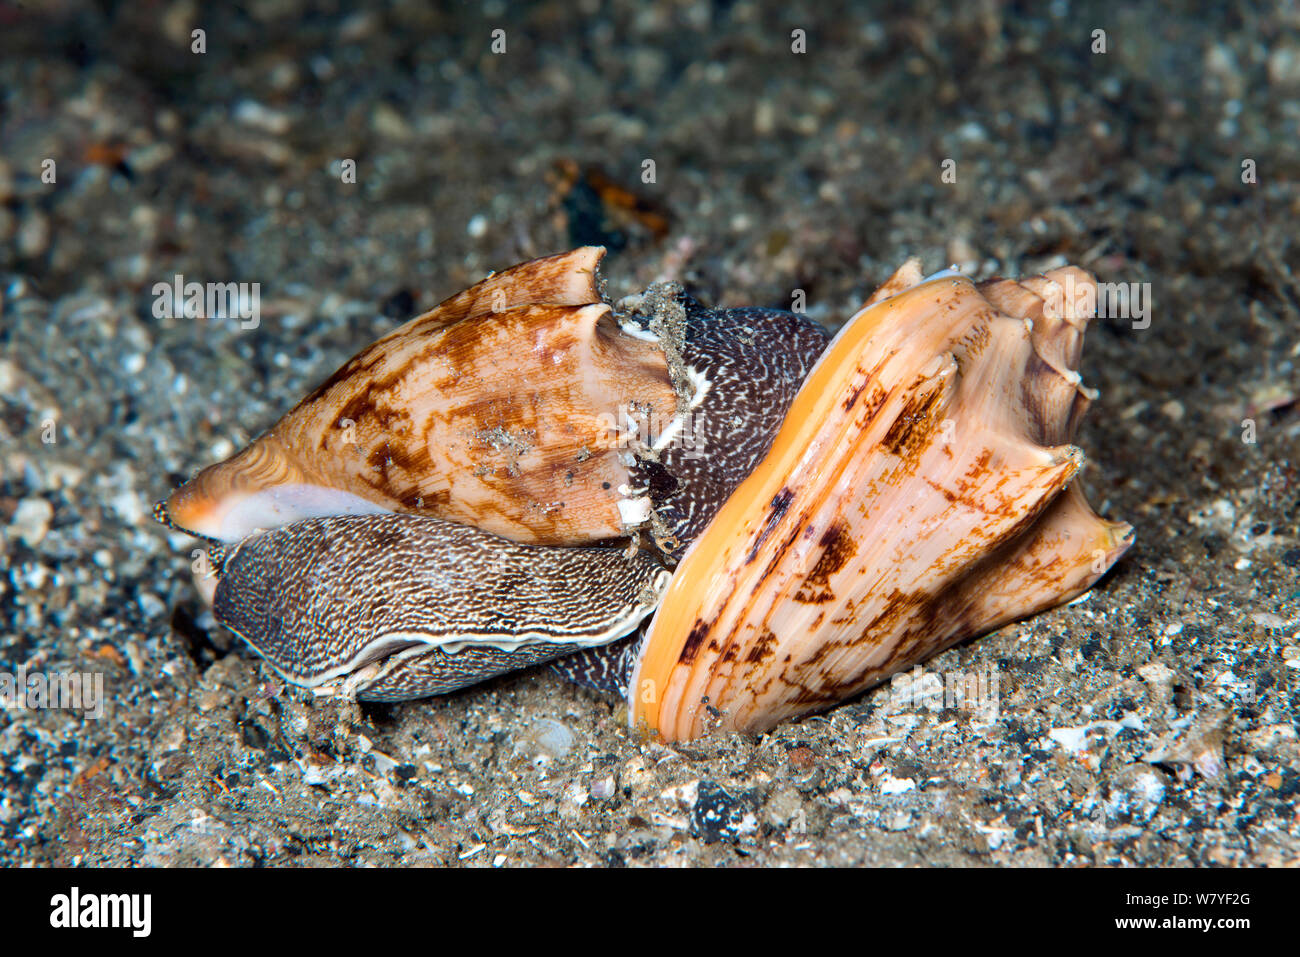 Bat volute d'escargots de mer (prédateurs Cymbiola vespertilio) l'accouplement, le Détroit de Lembeh, au nord de Sulawesi, Indonésie. Banque D'Images